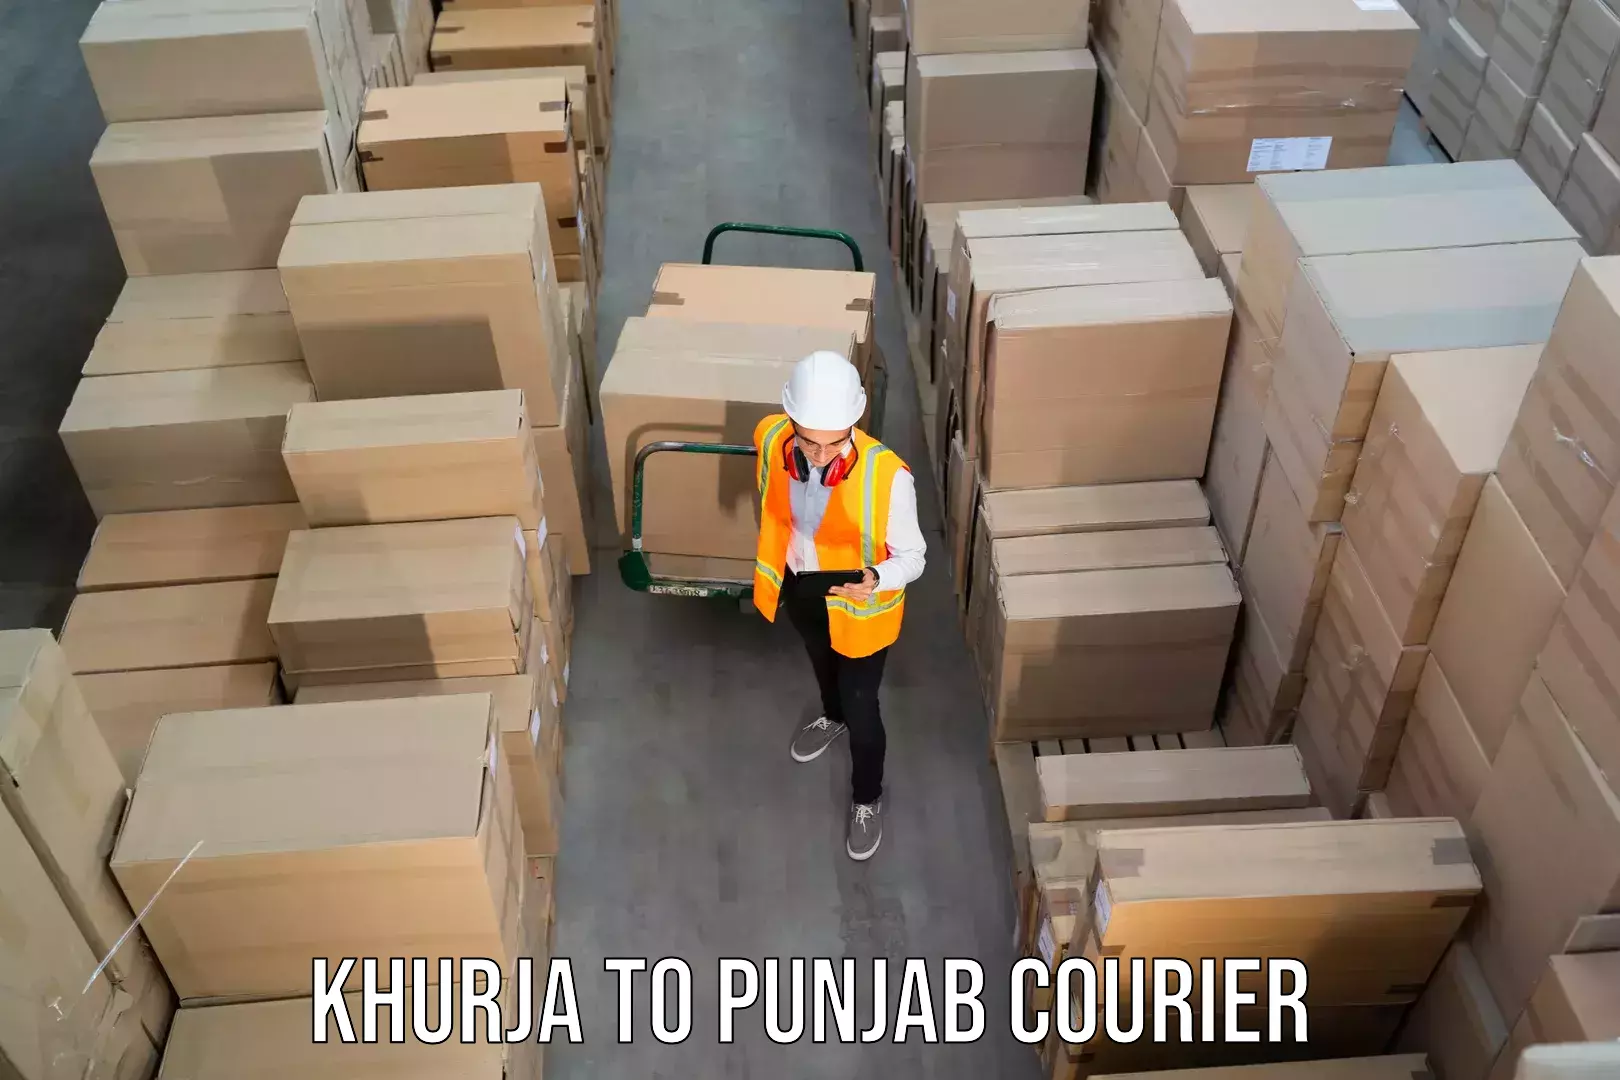 Seamless shipping experience Khurja to Punjab